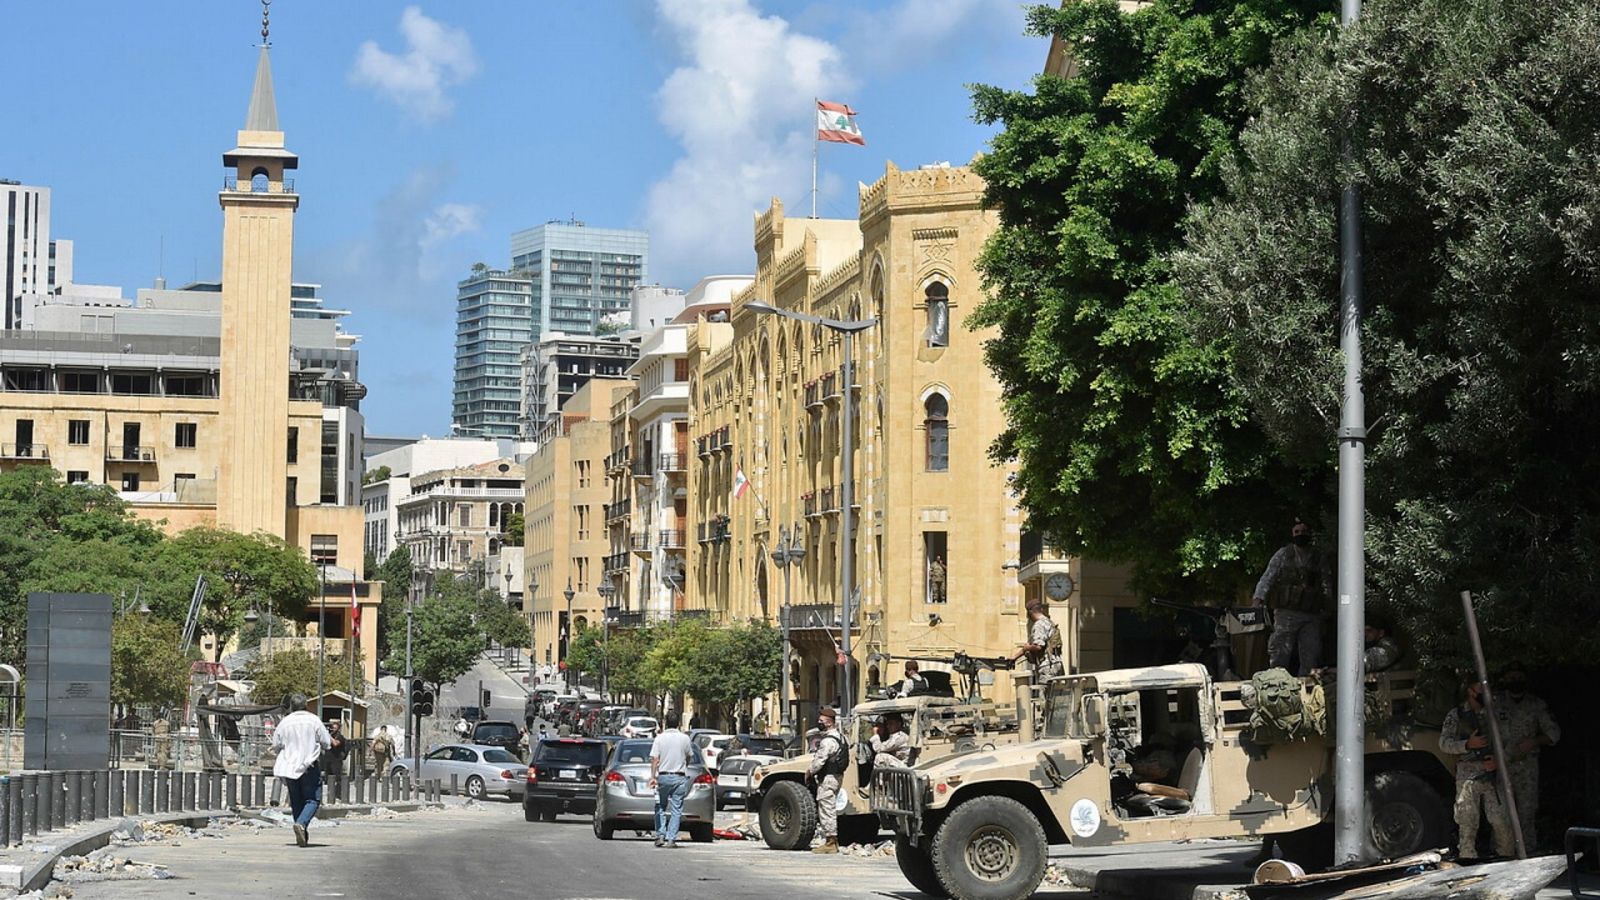 14 horas fin de semana - Primera dimisión en el gobierno de Líbano donde se esperan nuevas manifestaciones - Escuchar ahora